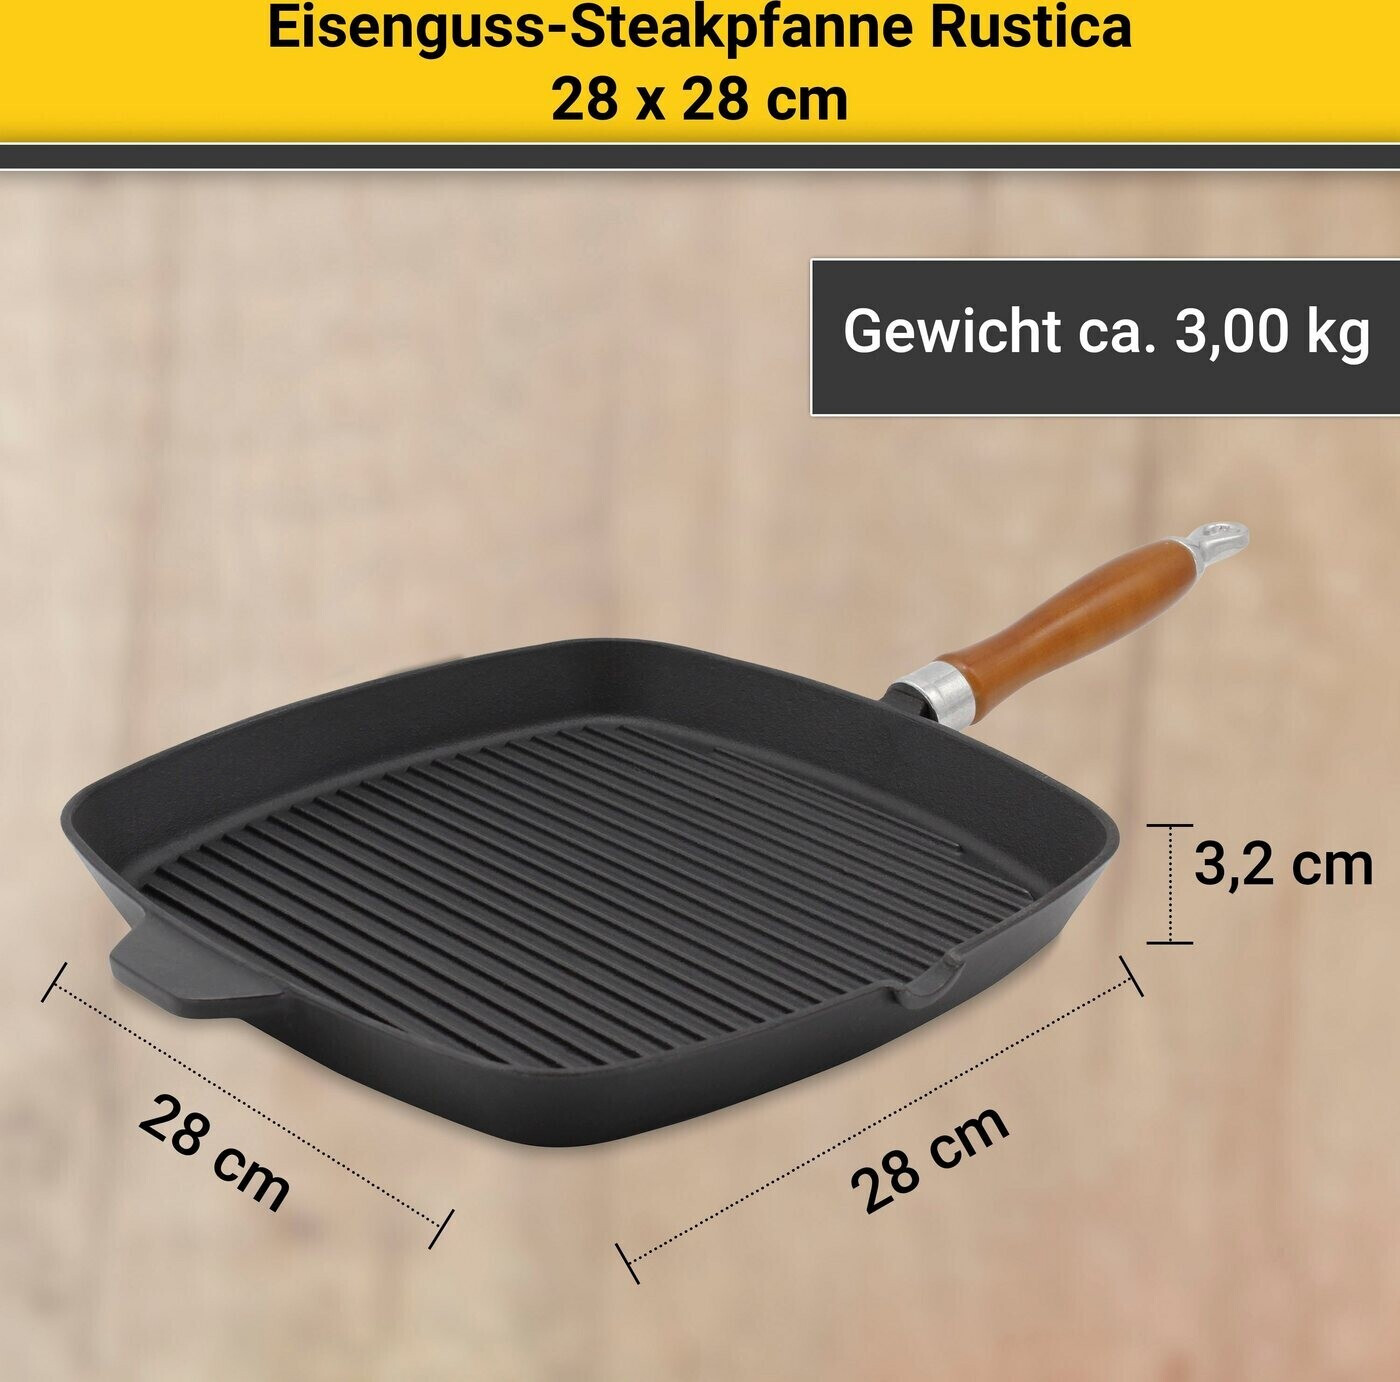 x 39,95 Grillpfanne Preisvergleich ab cm bei Rustica 28 € Krüger 28 |